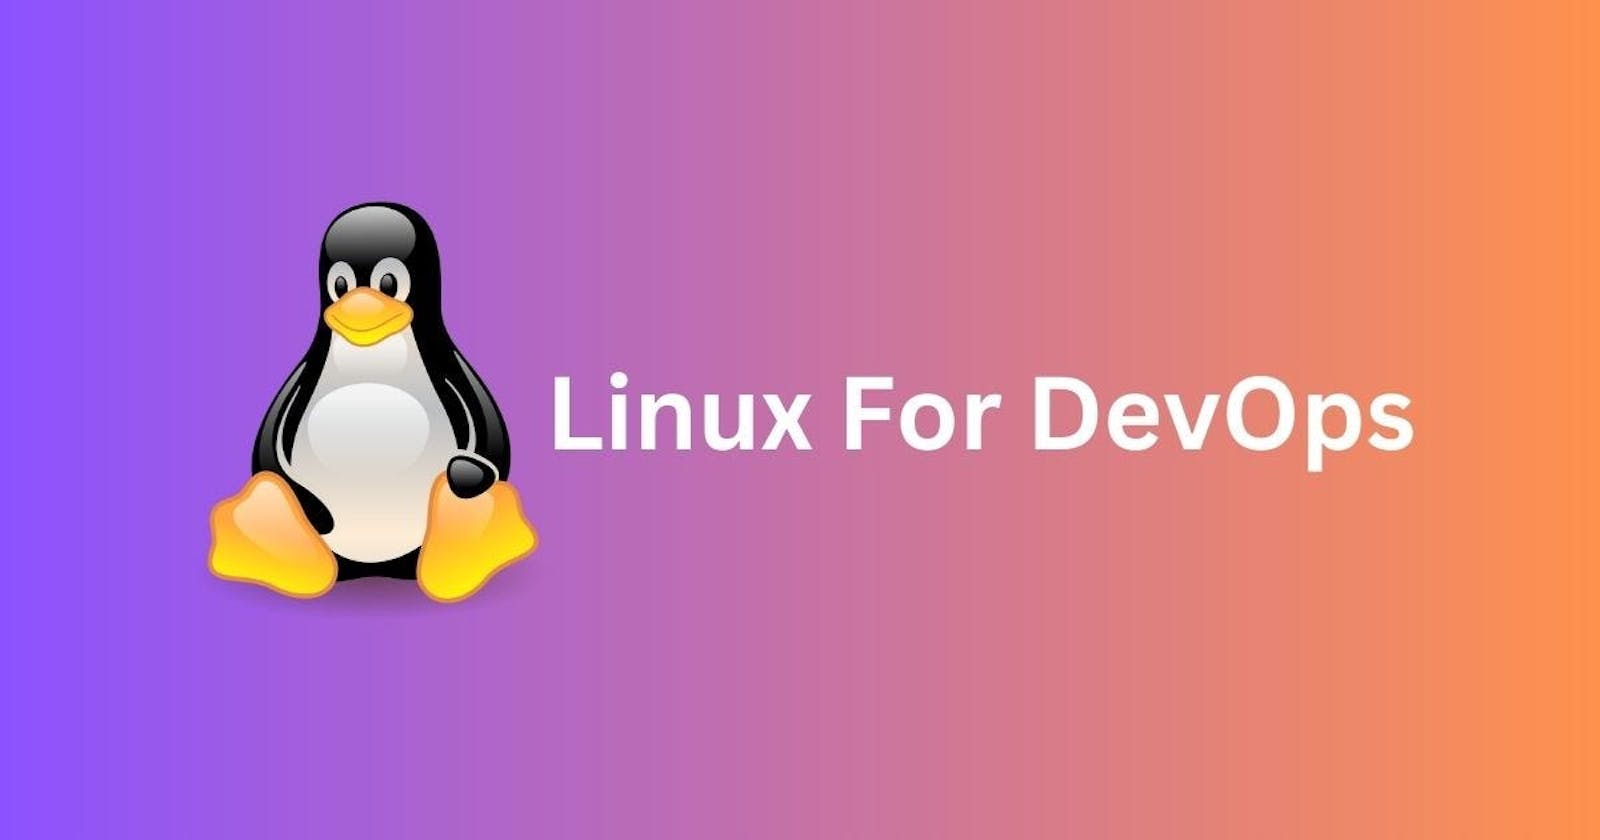 Linux commands for DevOps